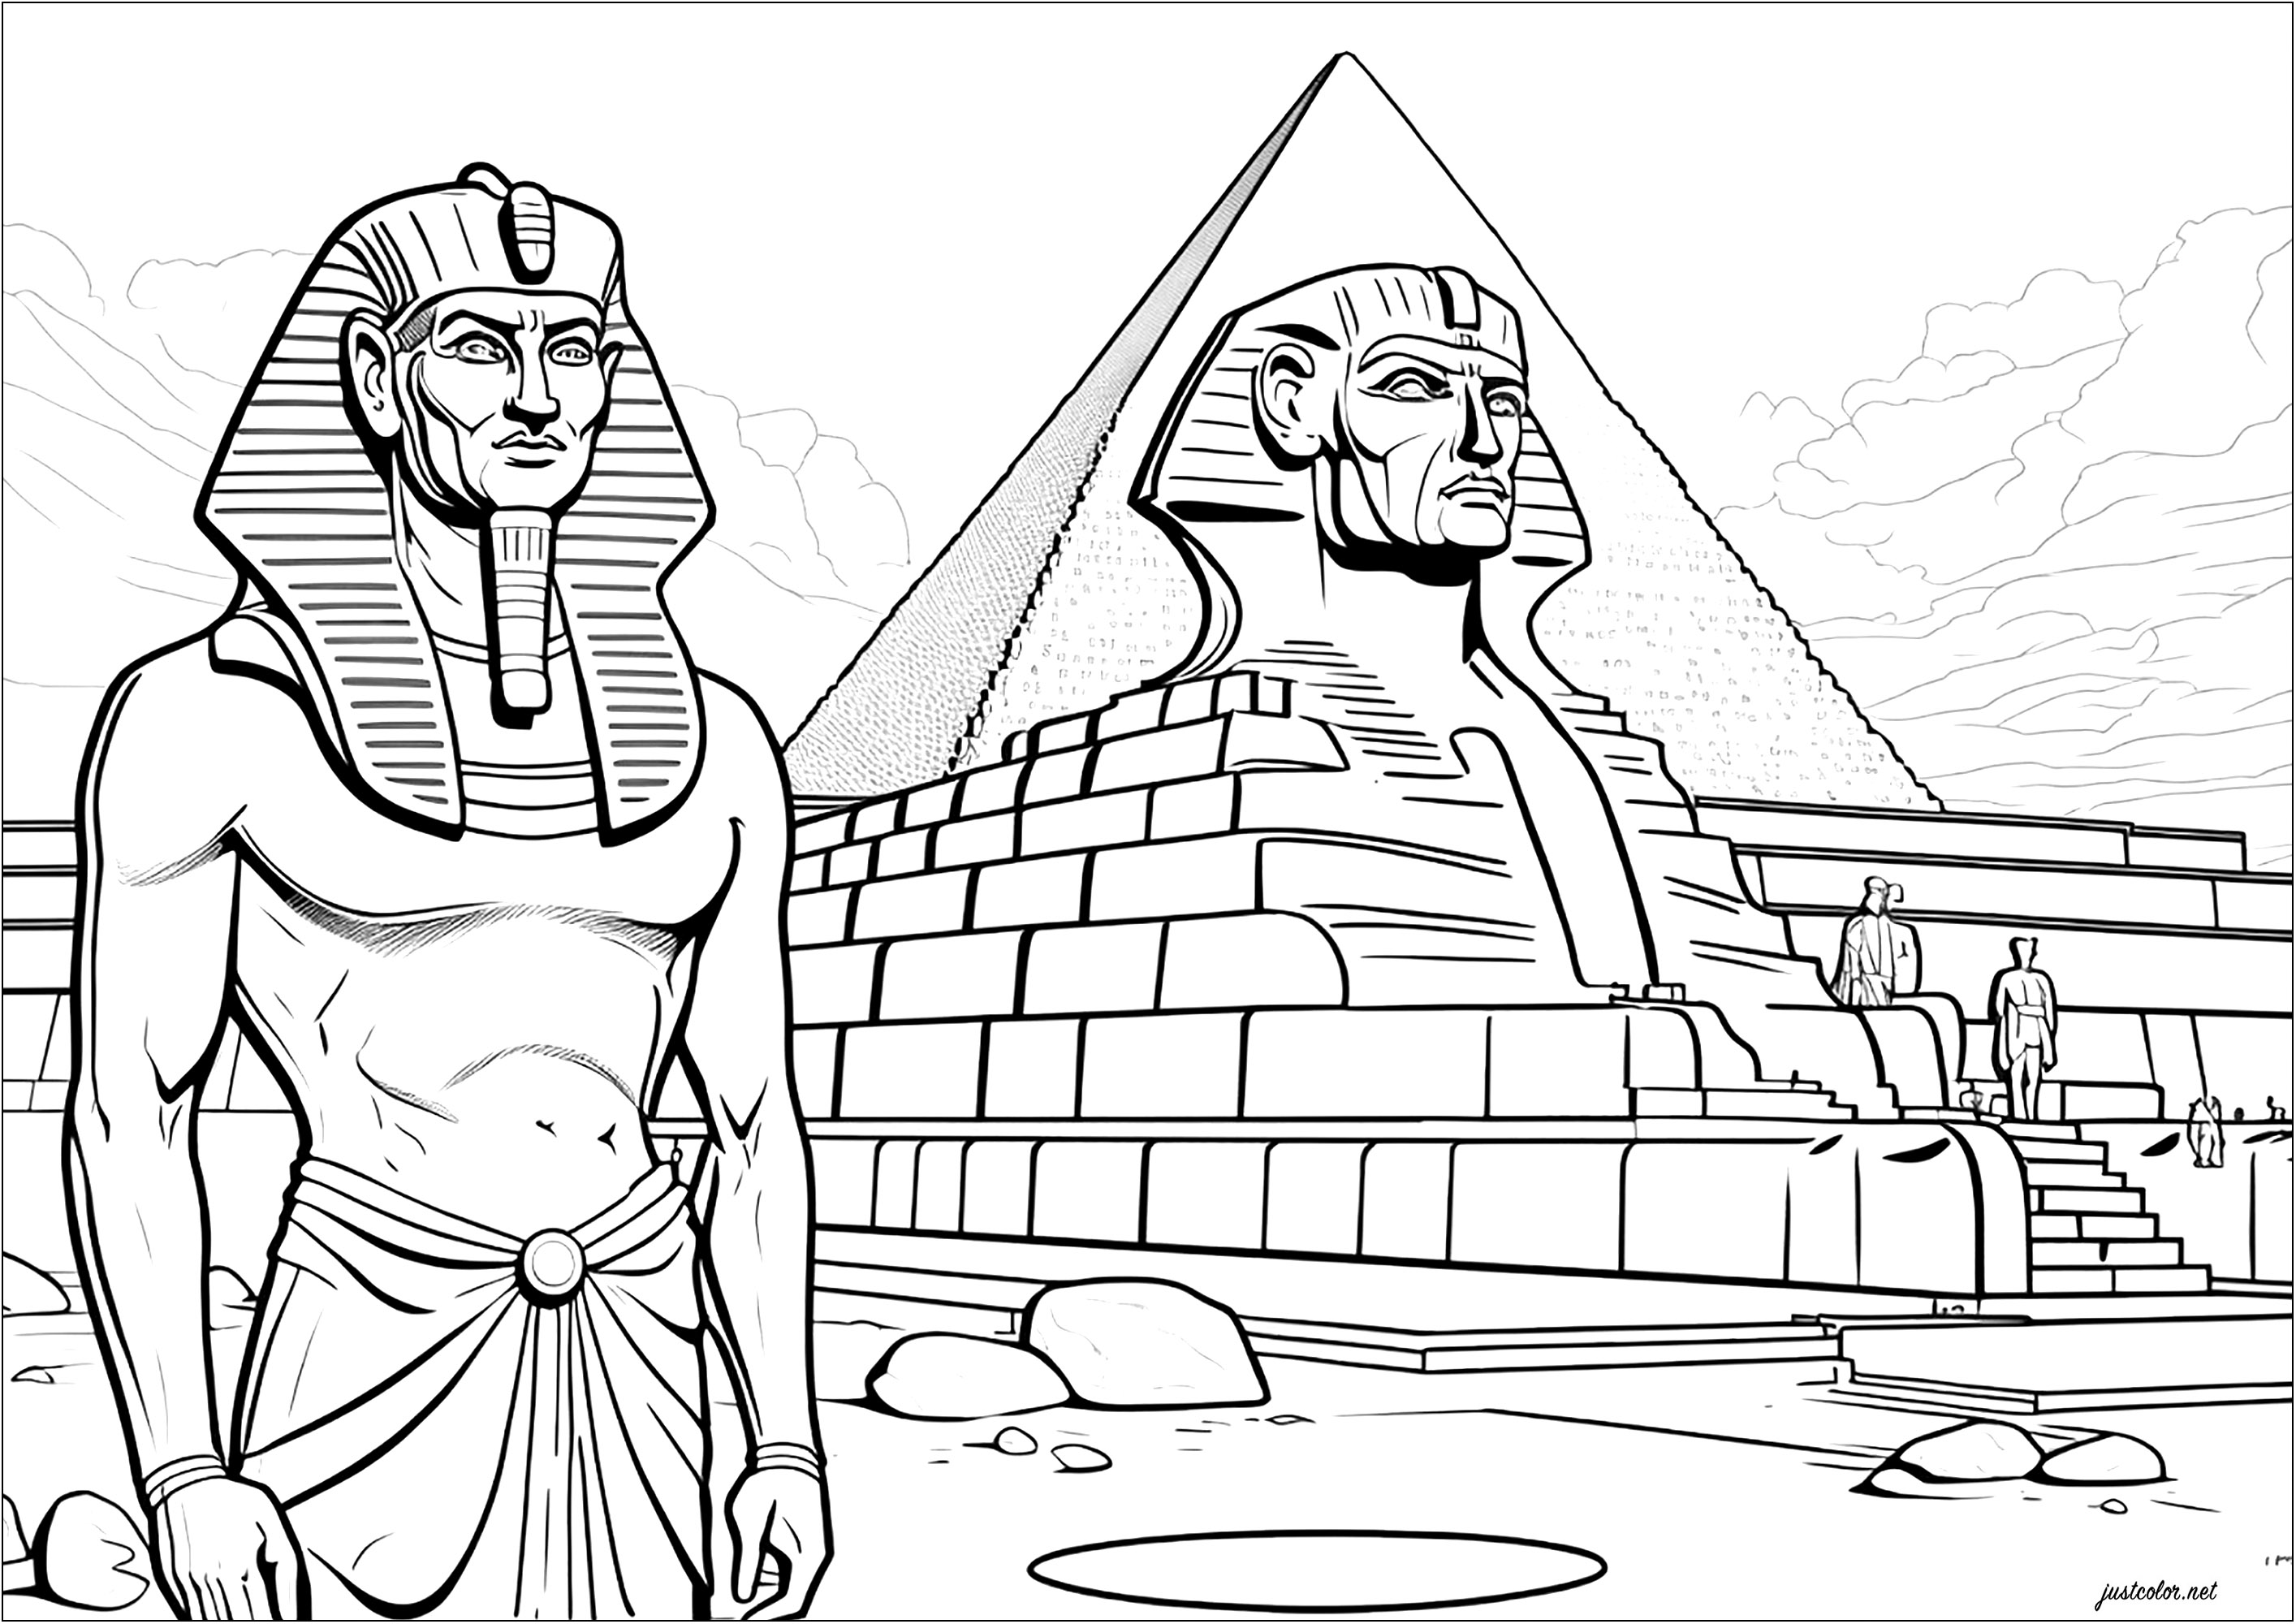 Pharao vor Sphynx und Pyramide. Diese Malvorlage zeigt einen Pharao, der vor einer Sphynx steht, die ihn und eine große Pyramide darstellt.
